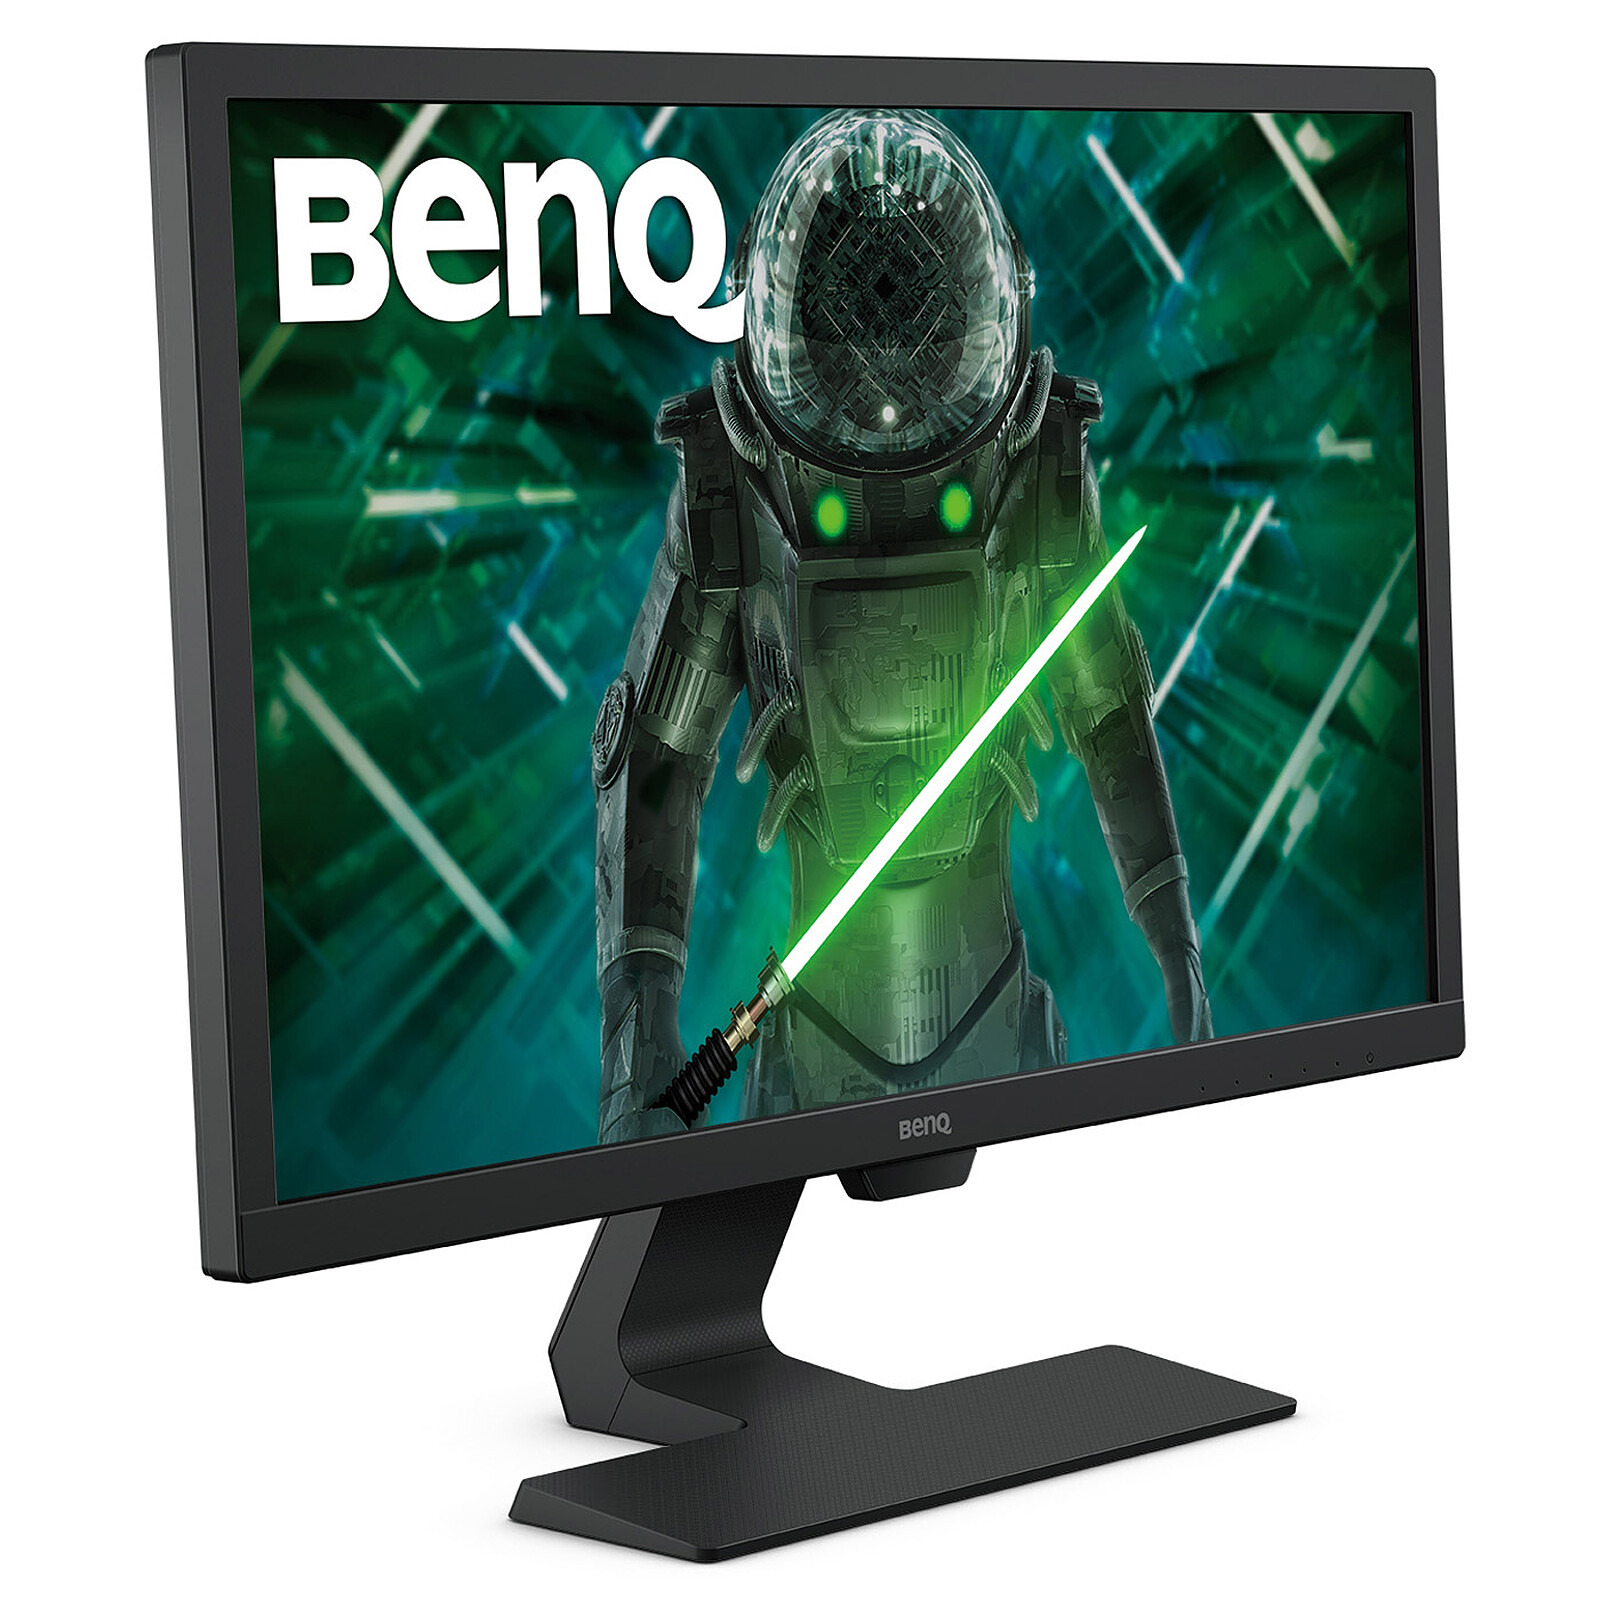 Monitor Benq FullHD y con formato 16:9